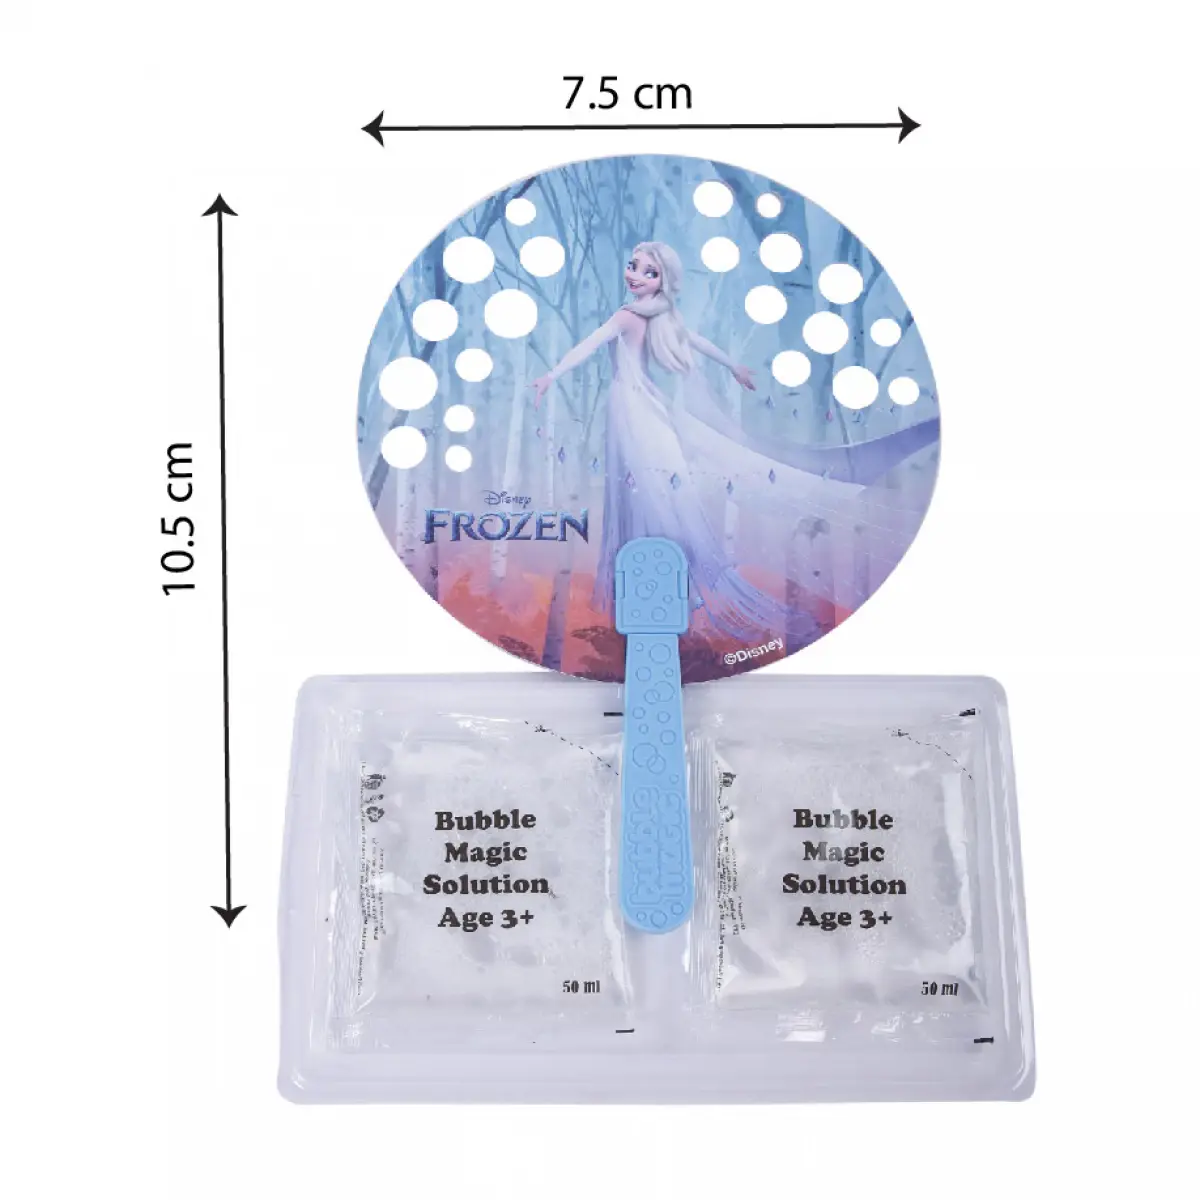 Bubble Magic Fan Bubs Elsa Frozen Theme Bubble Solution For Kids of Age 3Y+, Multicolour